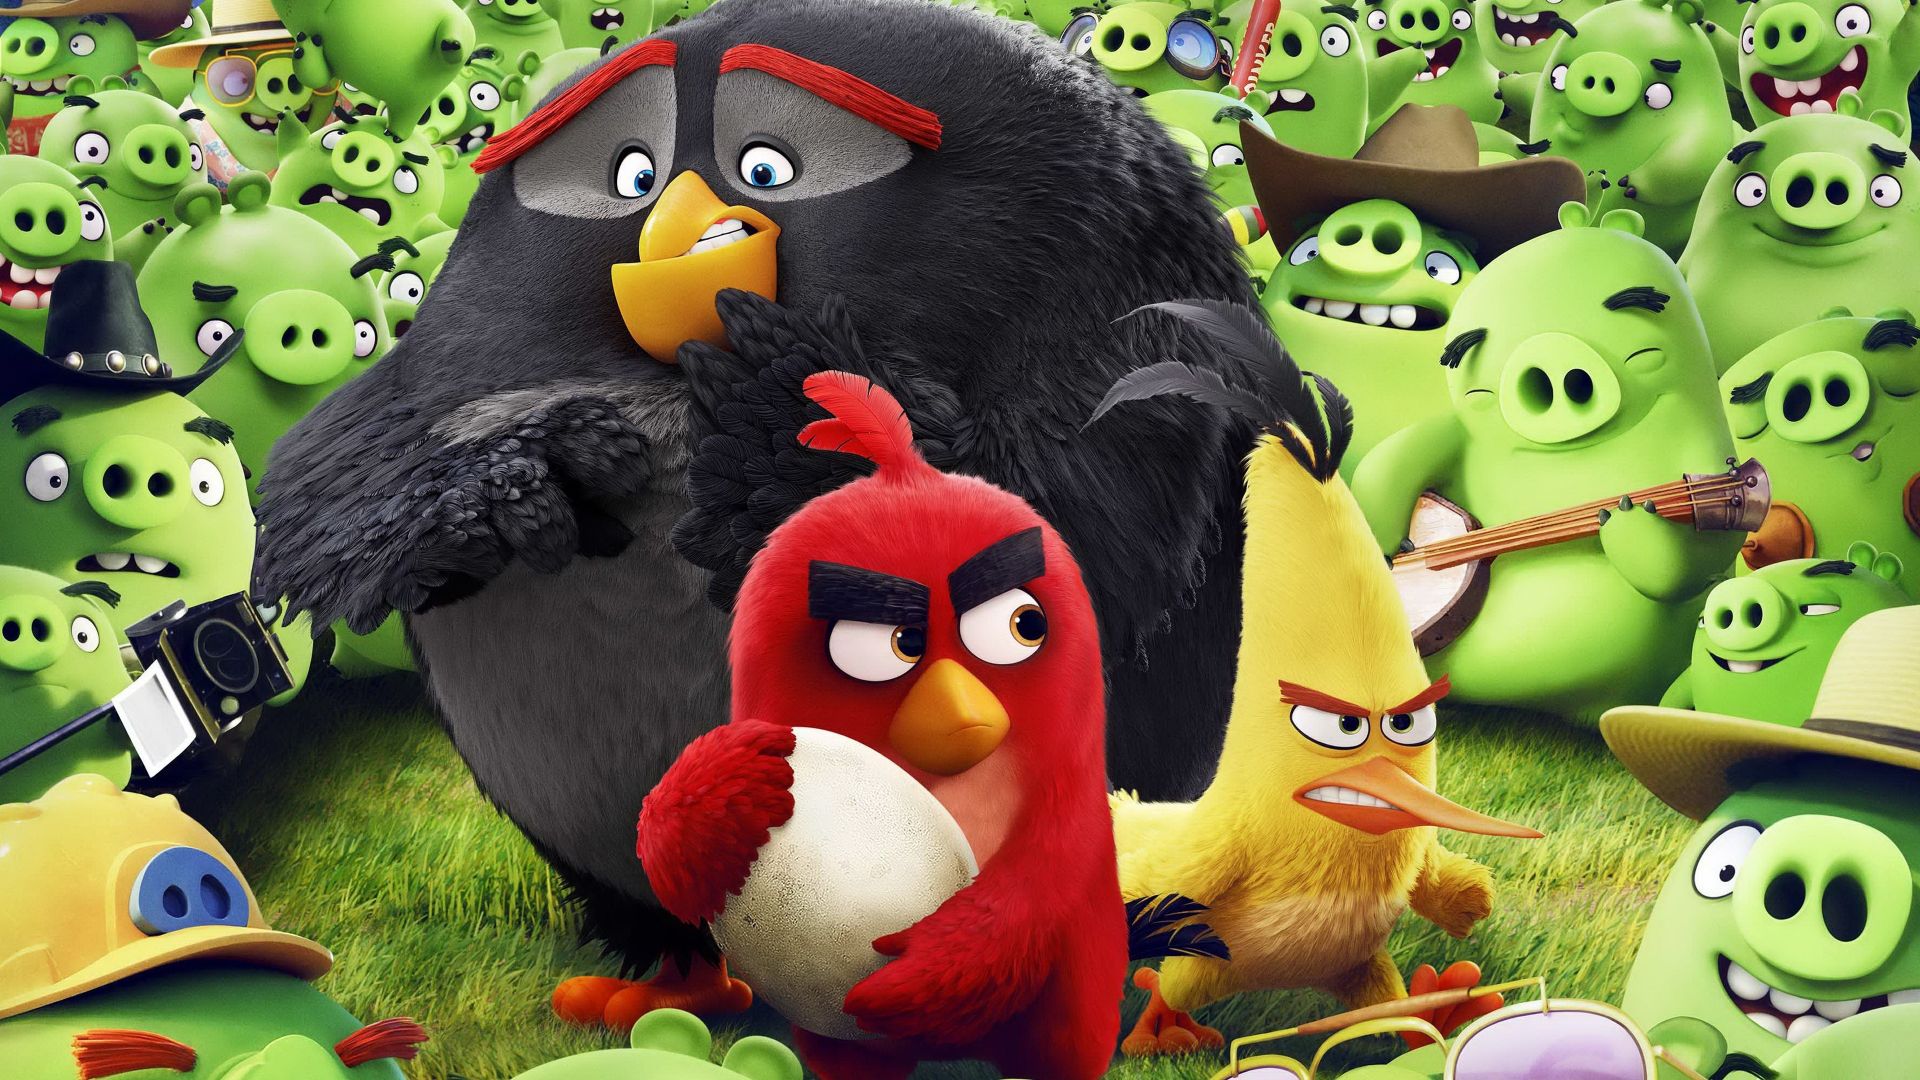 Angry Birds Movie, Красный, Бомбочка, Чак, Лучшие мультфильмы 2016, Angry Birds Movie, chuck, red, bomb, Best Animation Movies of 2016 (horizontal)